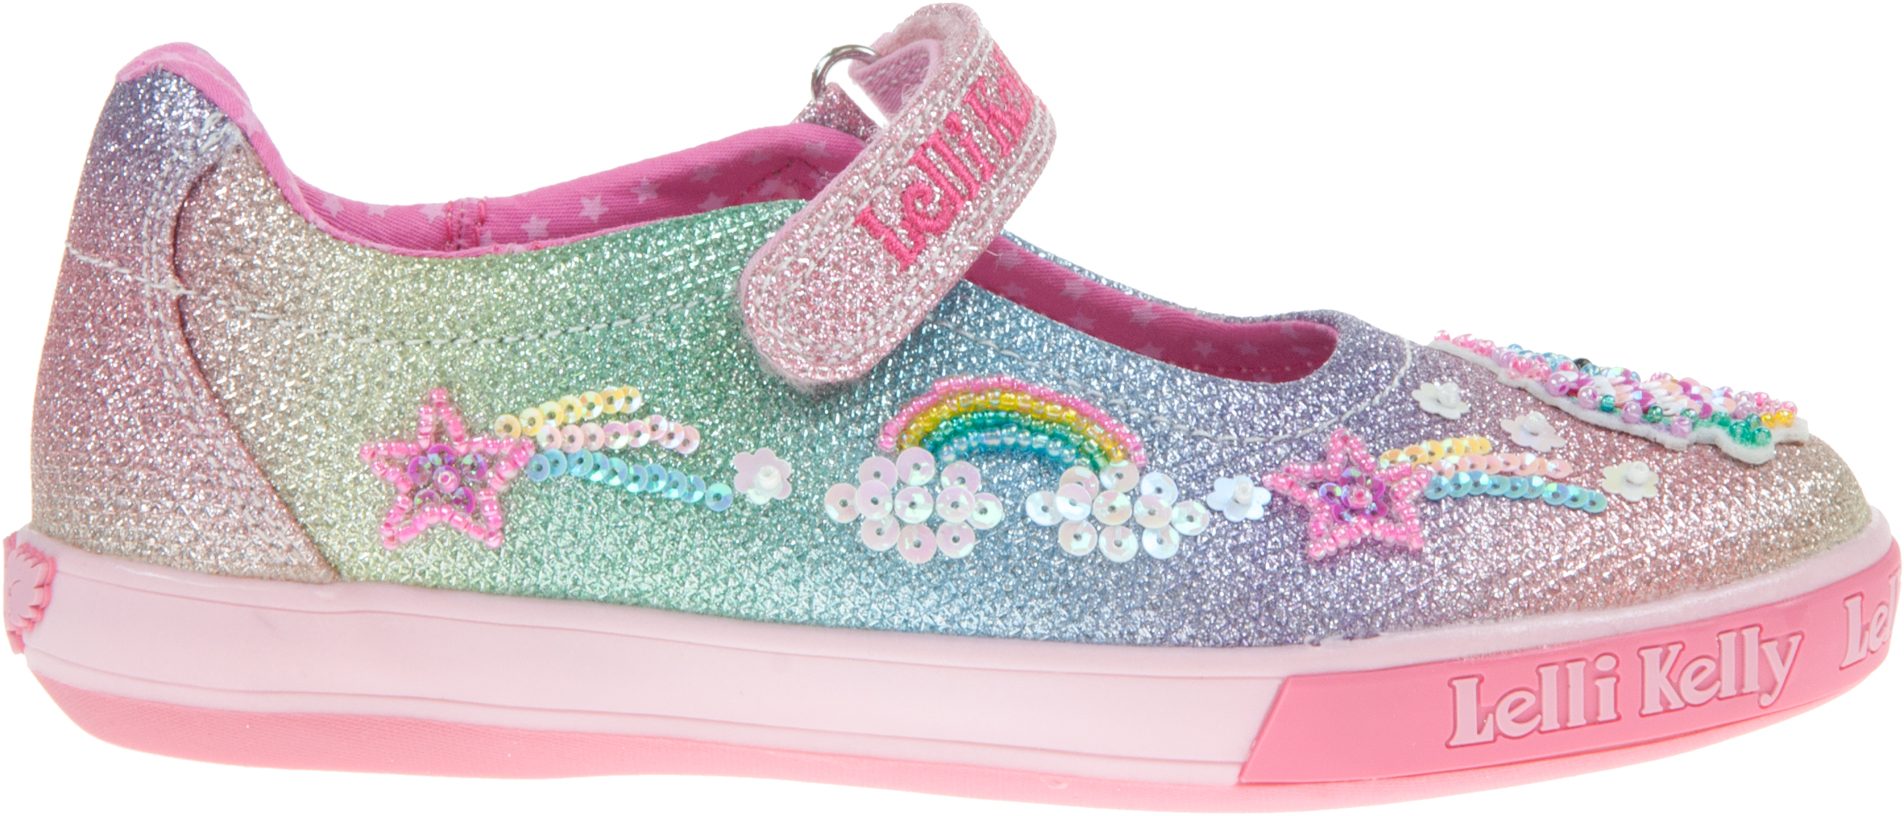 Lelli Kelly Treasure Dolly Multi Glitter LK7076 - Girls Shoes ...